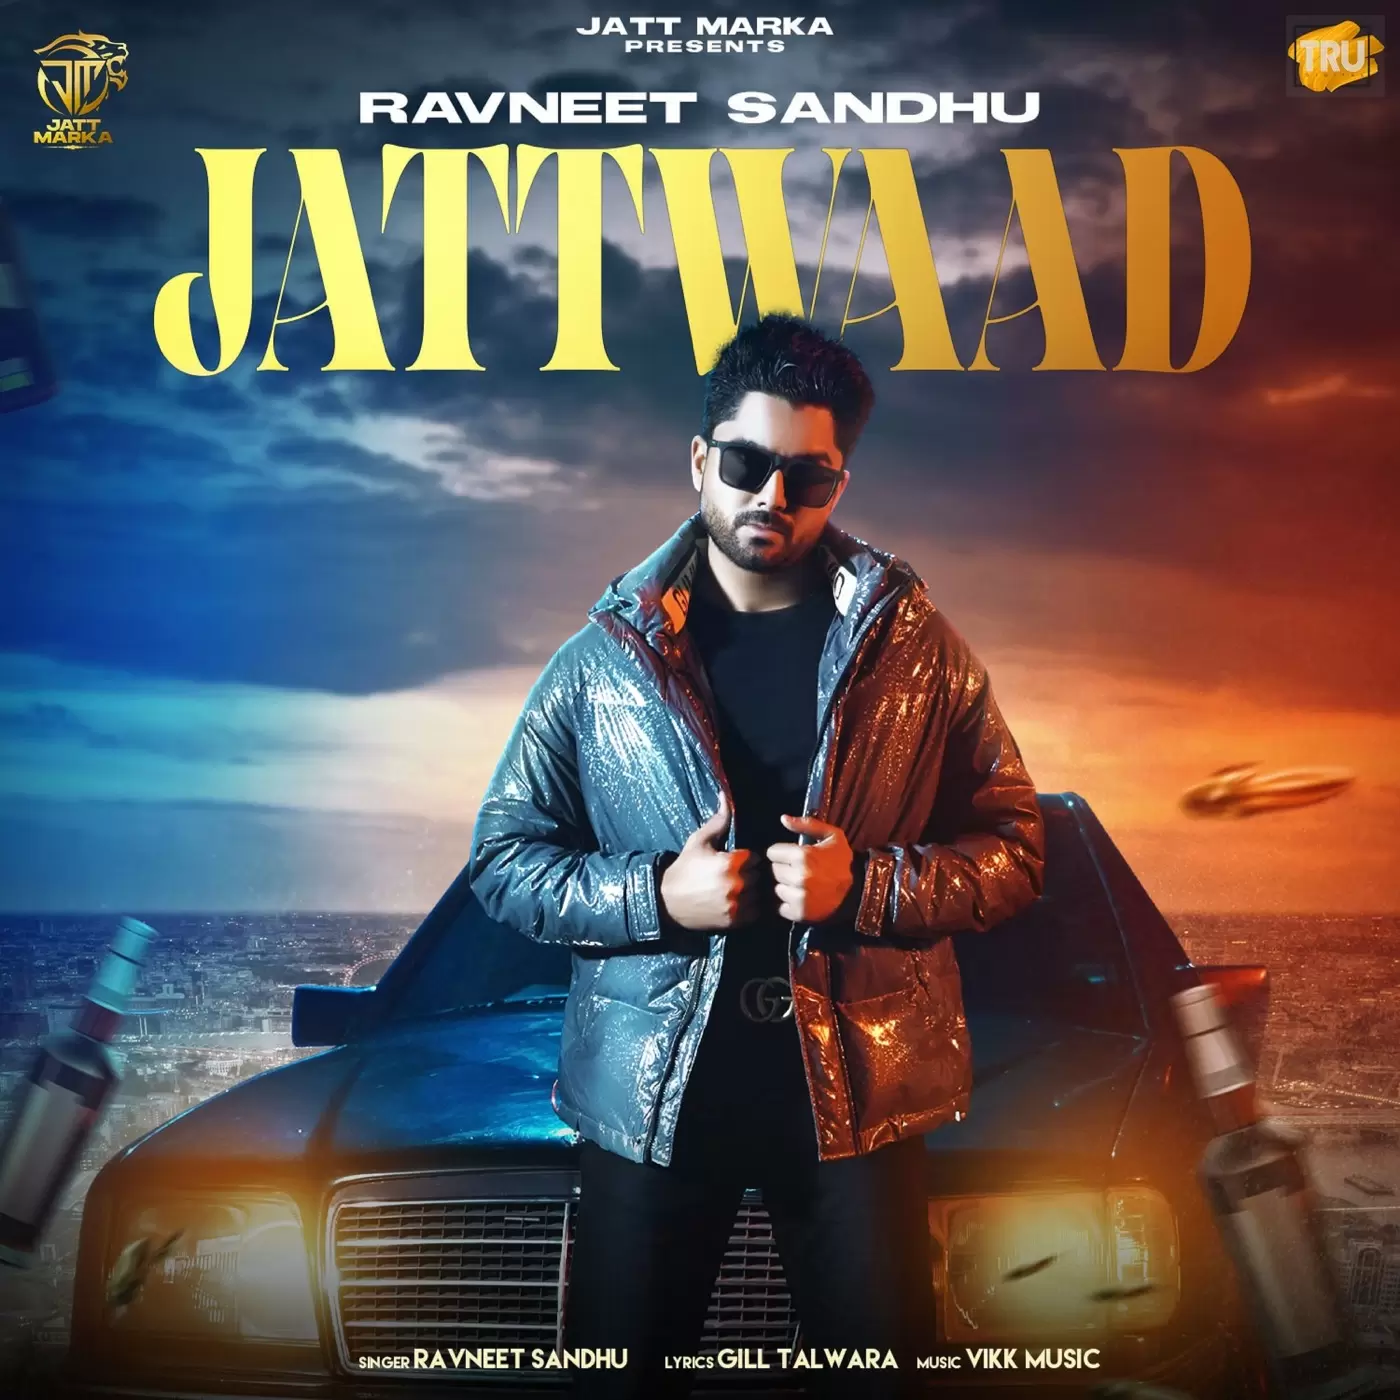 Jattwaad Ravneet Sandhu Mp3 Download Song - Mr-Punjab